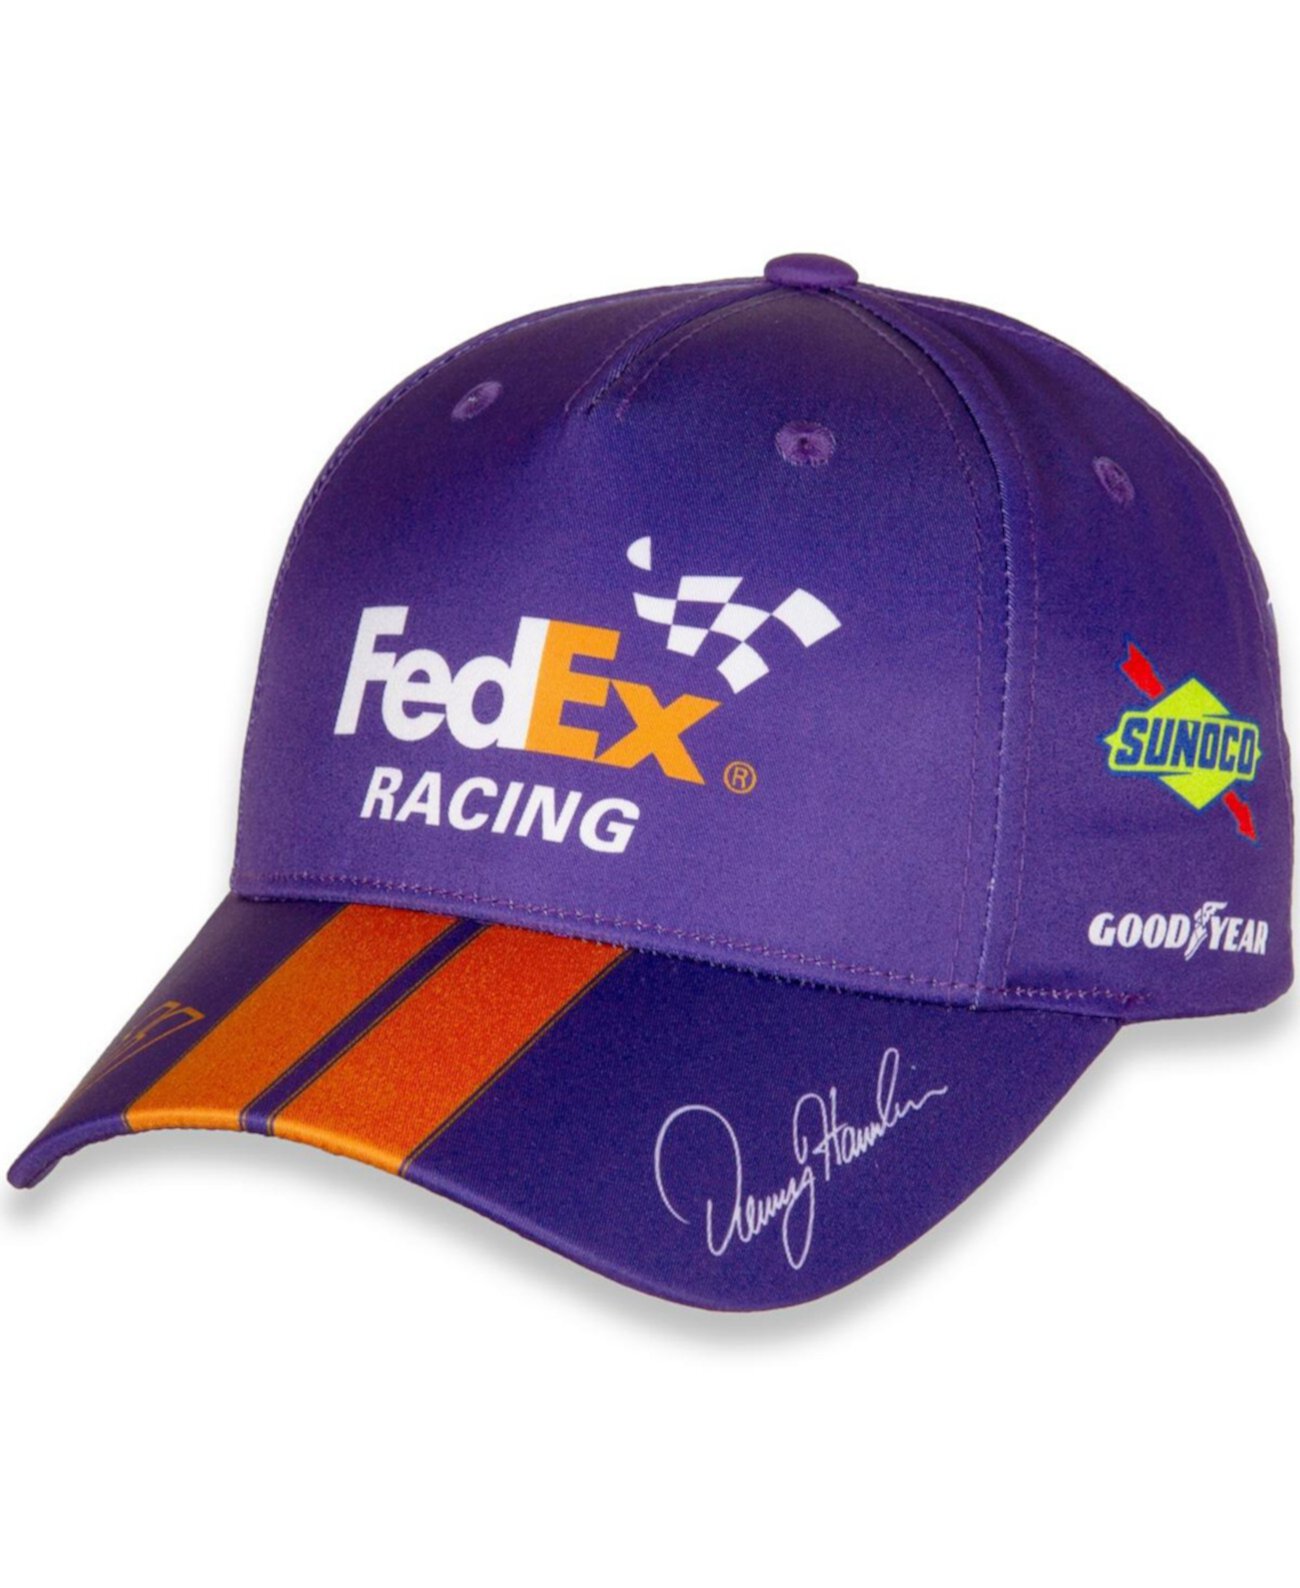 Мужская регулируемая шляпа униформы FedEx фиолетово-оранжевого цвета Denny Hamlin Joe Gibbs Racing Team Collection